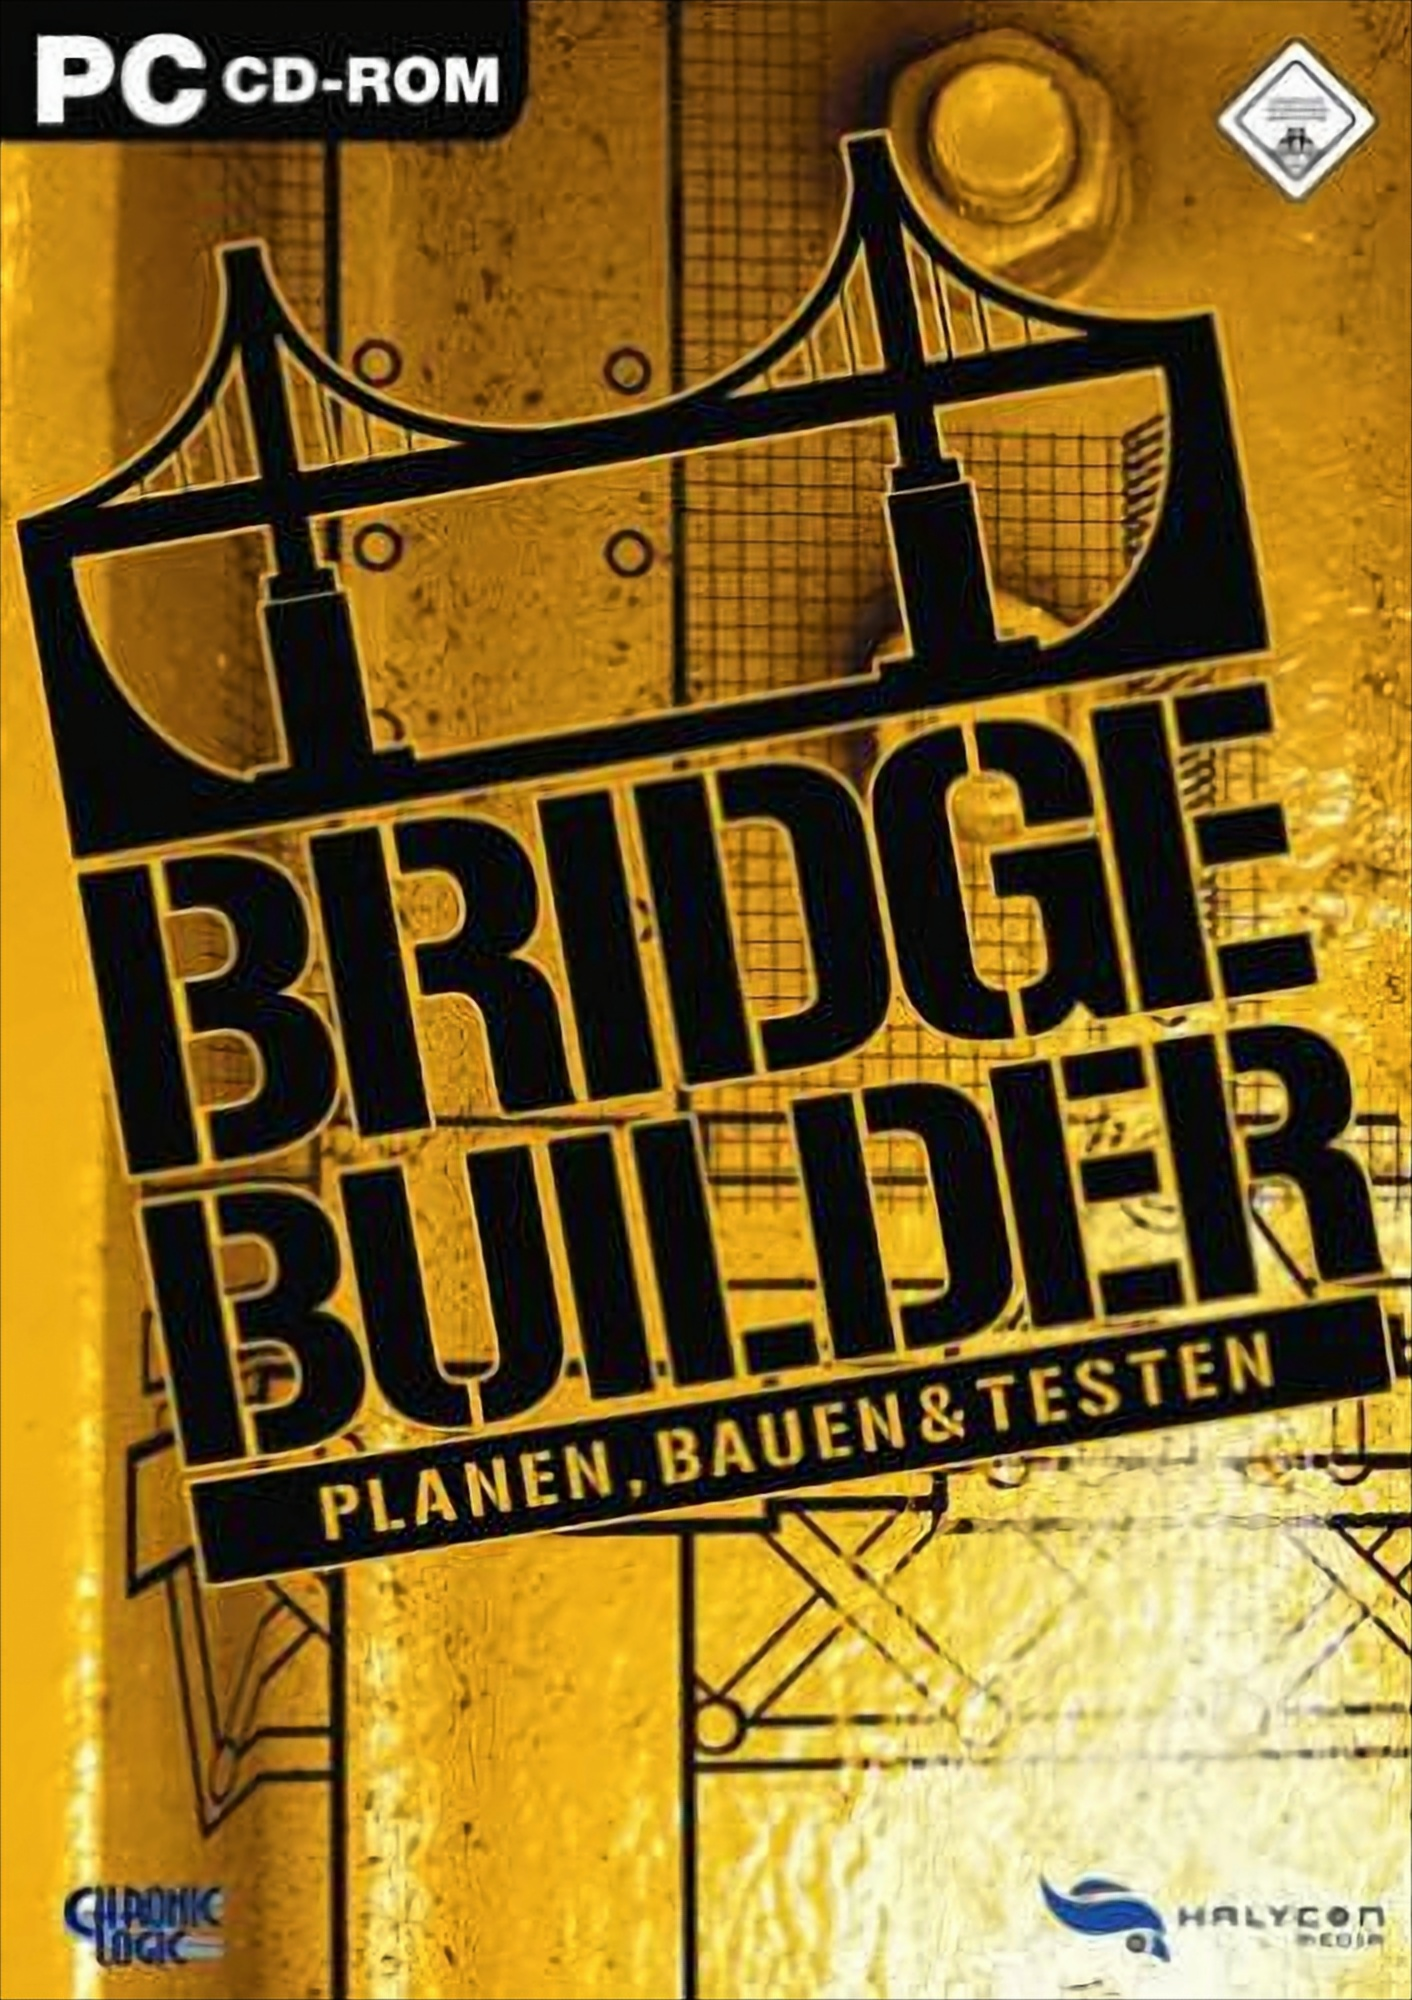 Builder - [PC] Bridge